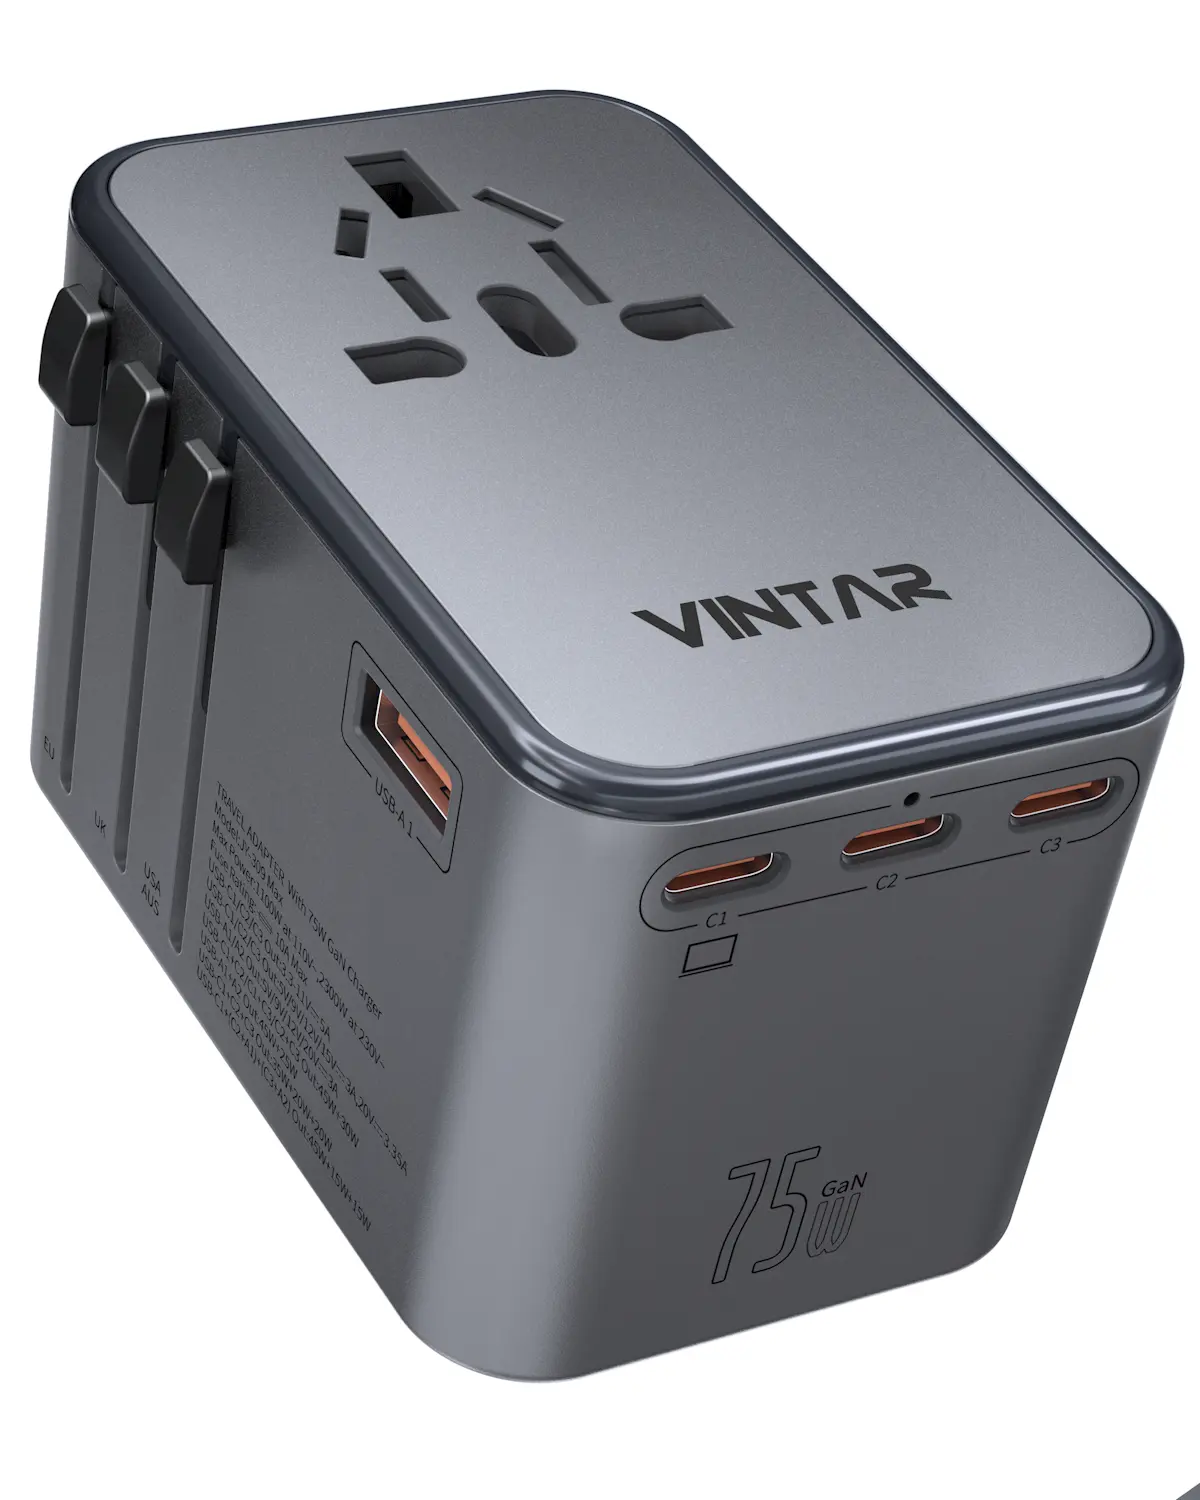 VINTAR GAN 75W USB tutto In uno adattatore per caricabatterie da viaggio universale da viaggio prese di corrente con EU US UK AU Plug